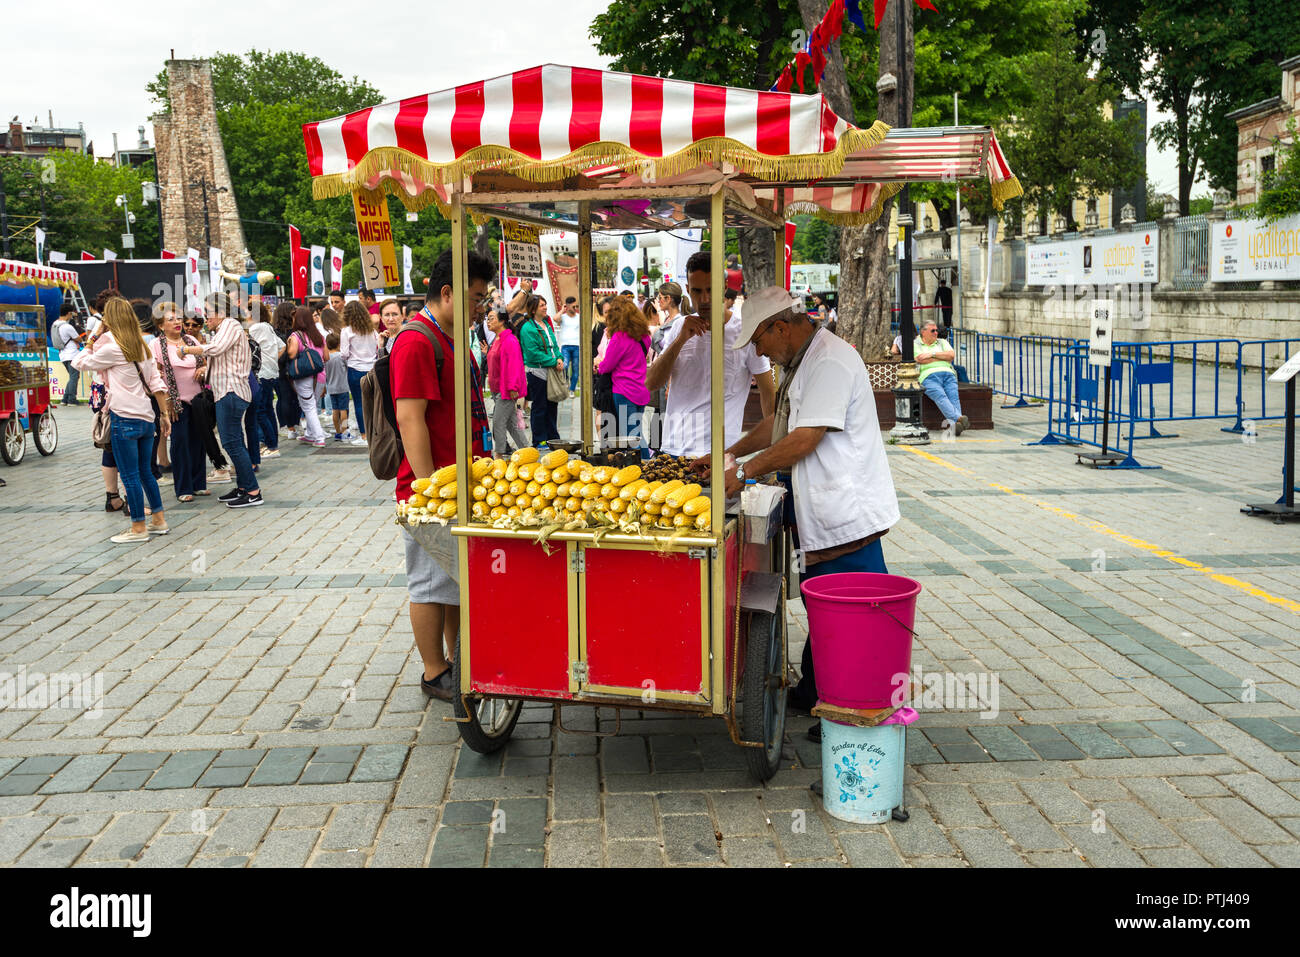 Un piccolo alimentari vendita di stallo la pannocchia o Süt Mısır al di fuori del Museo Hagia Sophia, Istanbul, Turchia Foto Stock